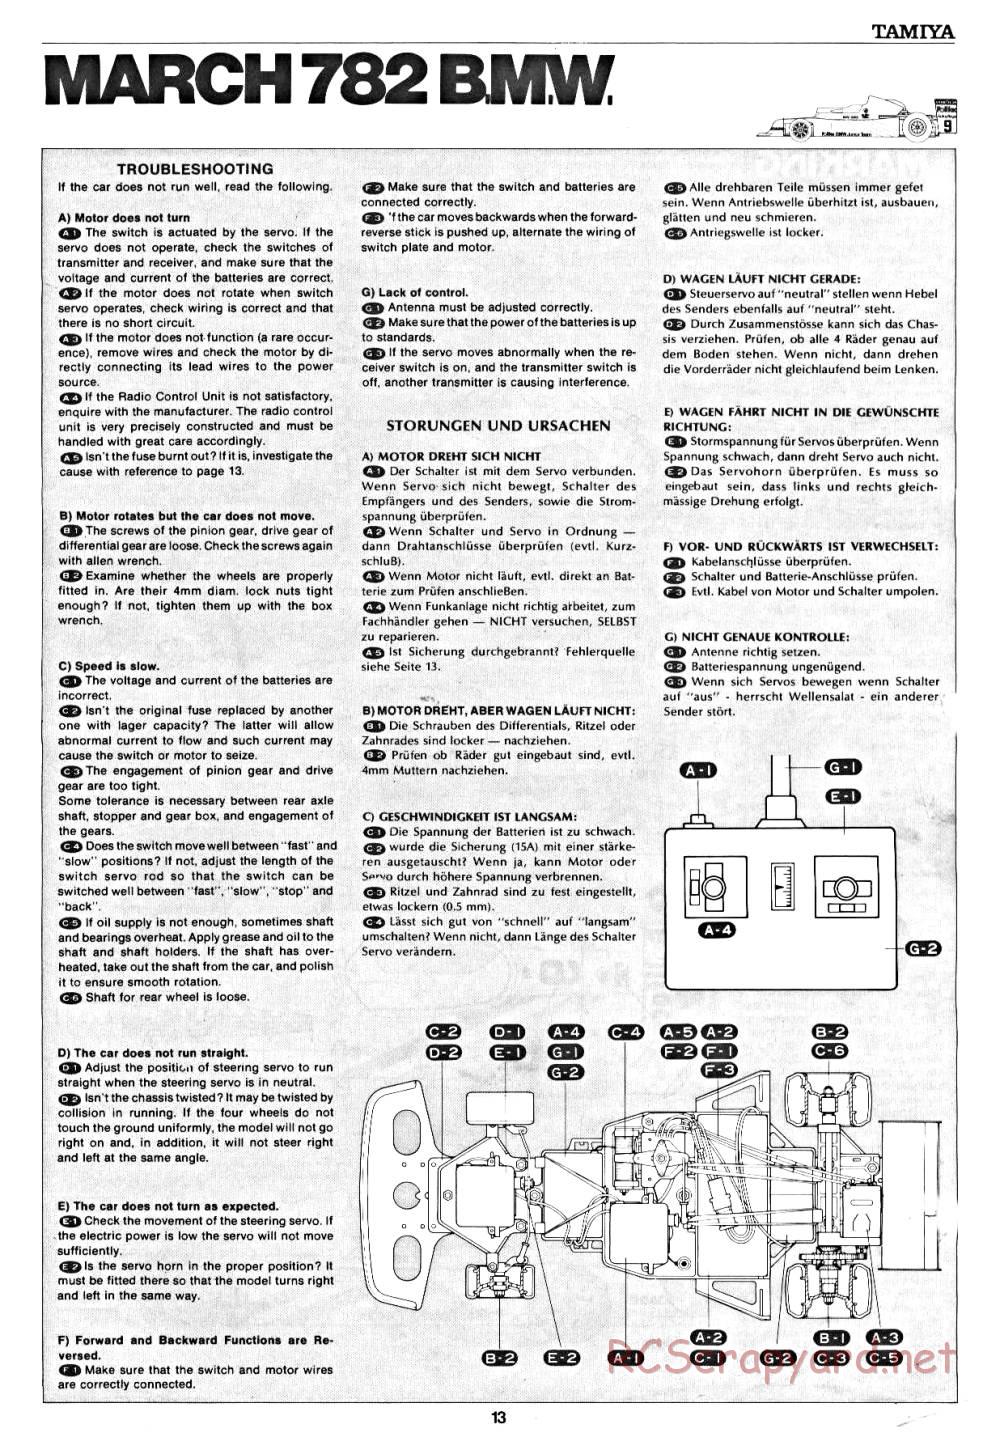 Tamiya - March 782 BMW (F2) - 58013 - Manual - Page 13